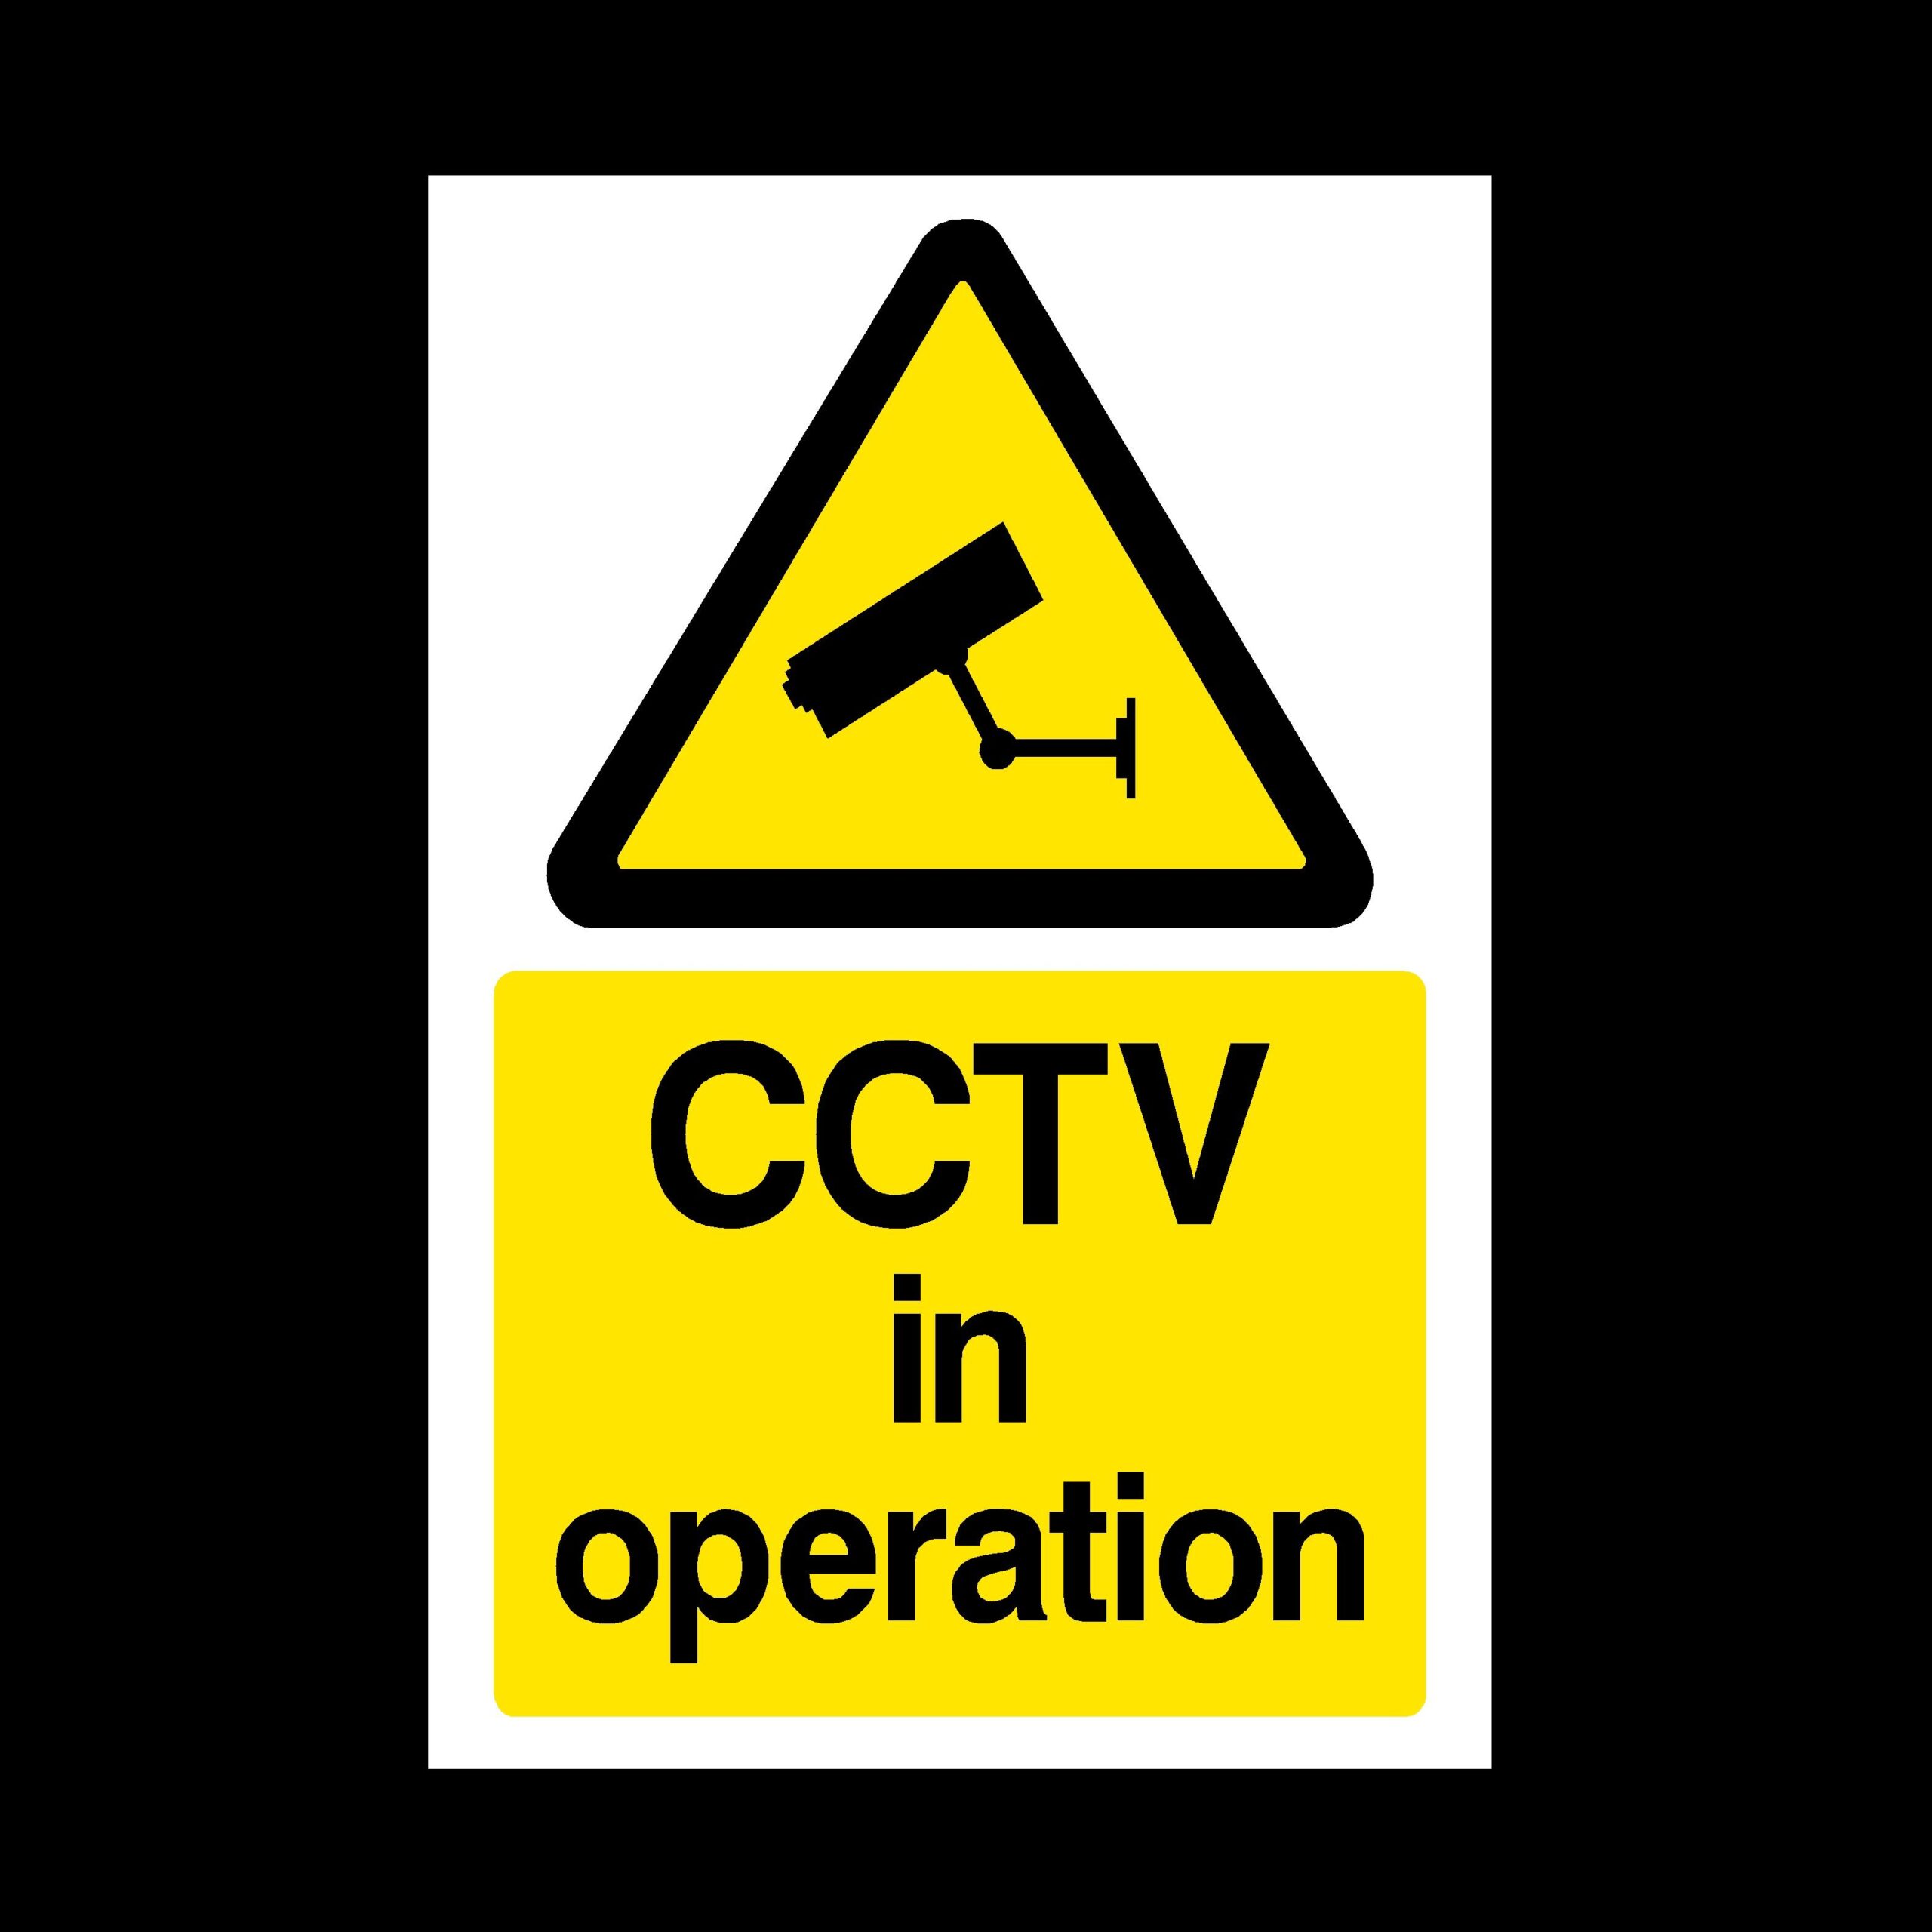 Kidsgrove CCTV